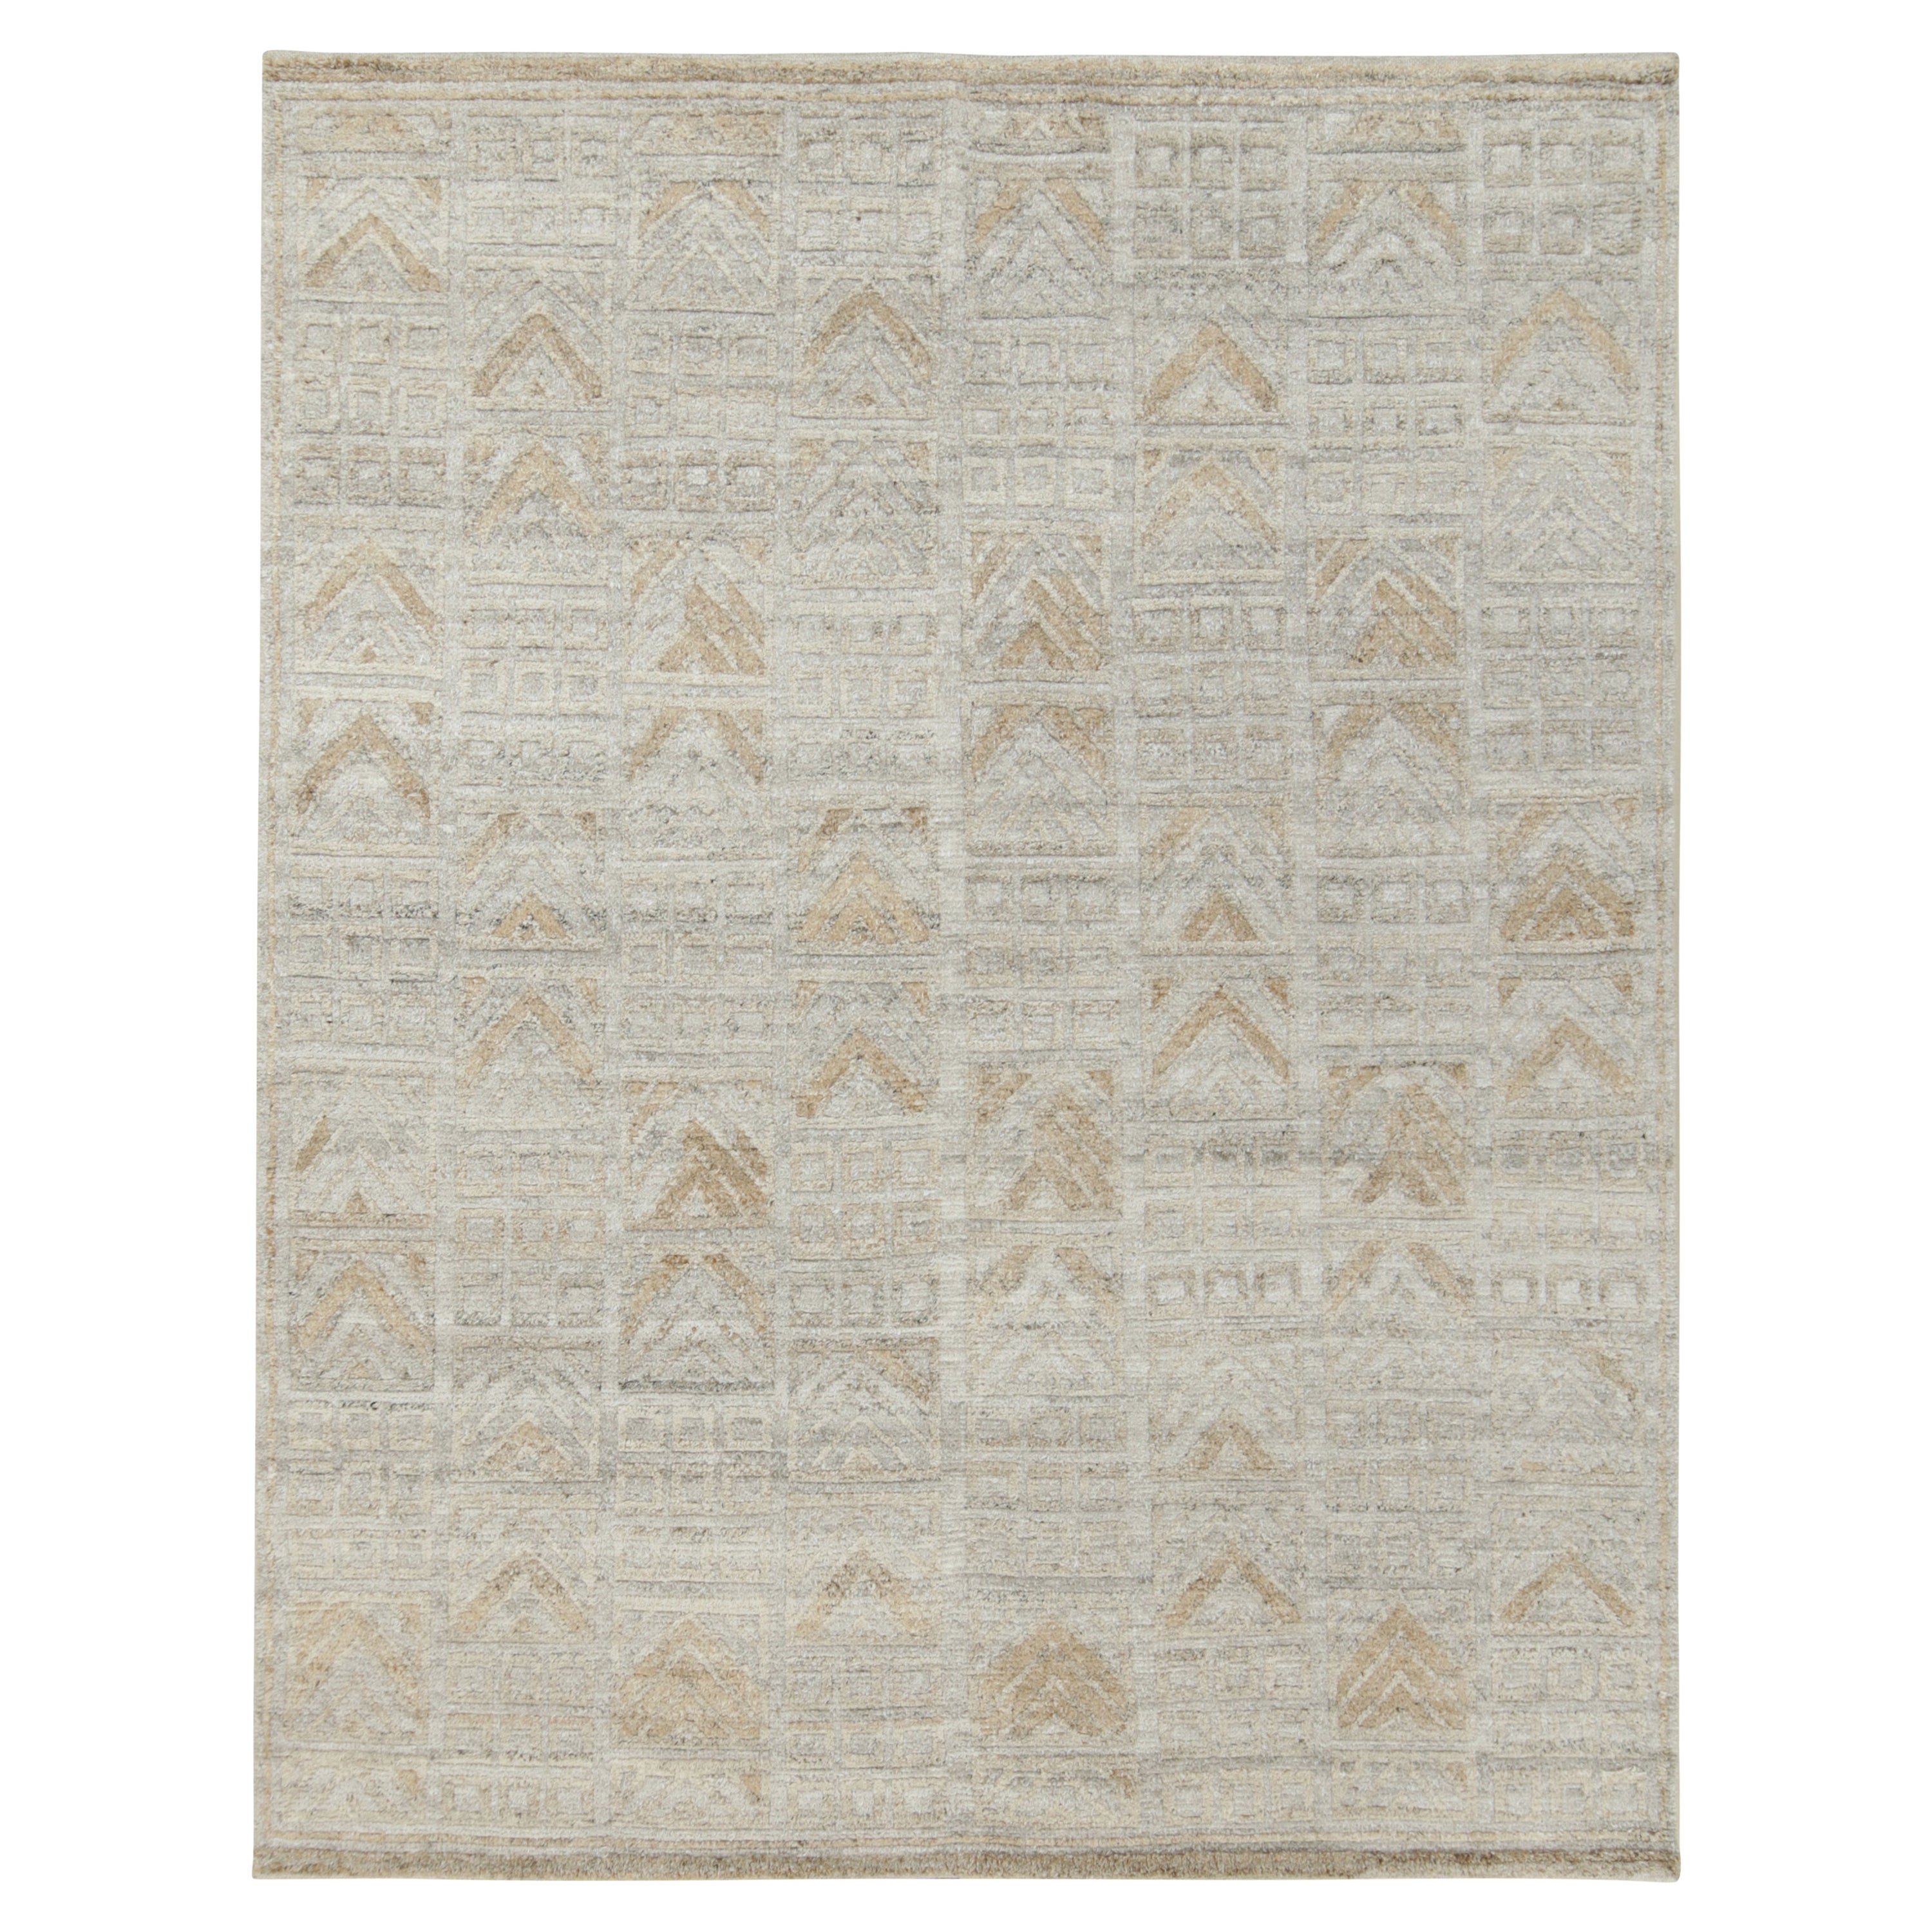 Skandinavischer Outdoor-Teppich von Rug & Kilim in Grau und Beige mit geometrischem Muster